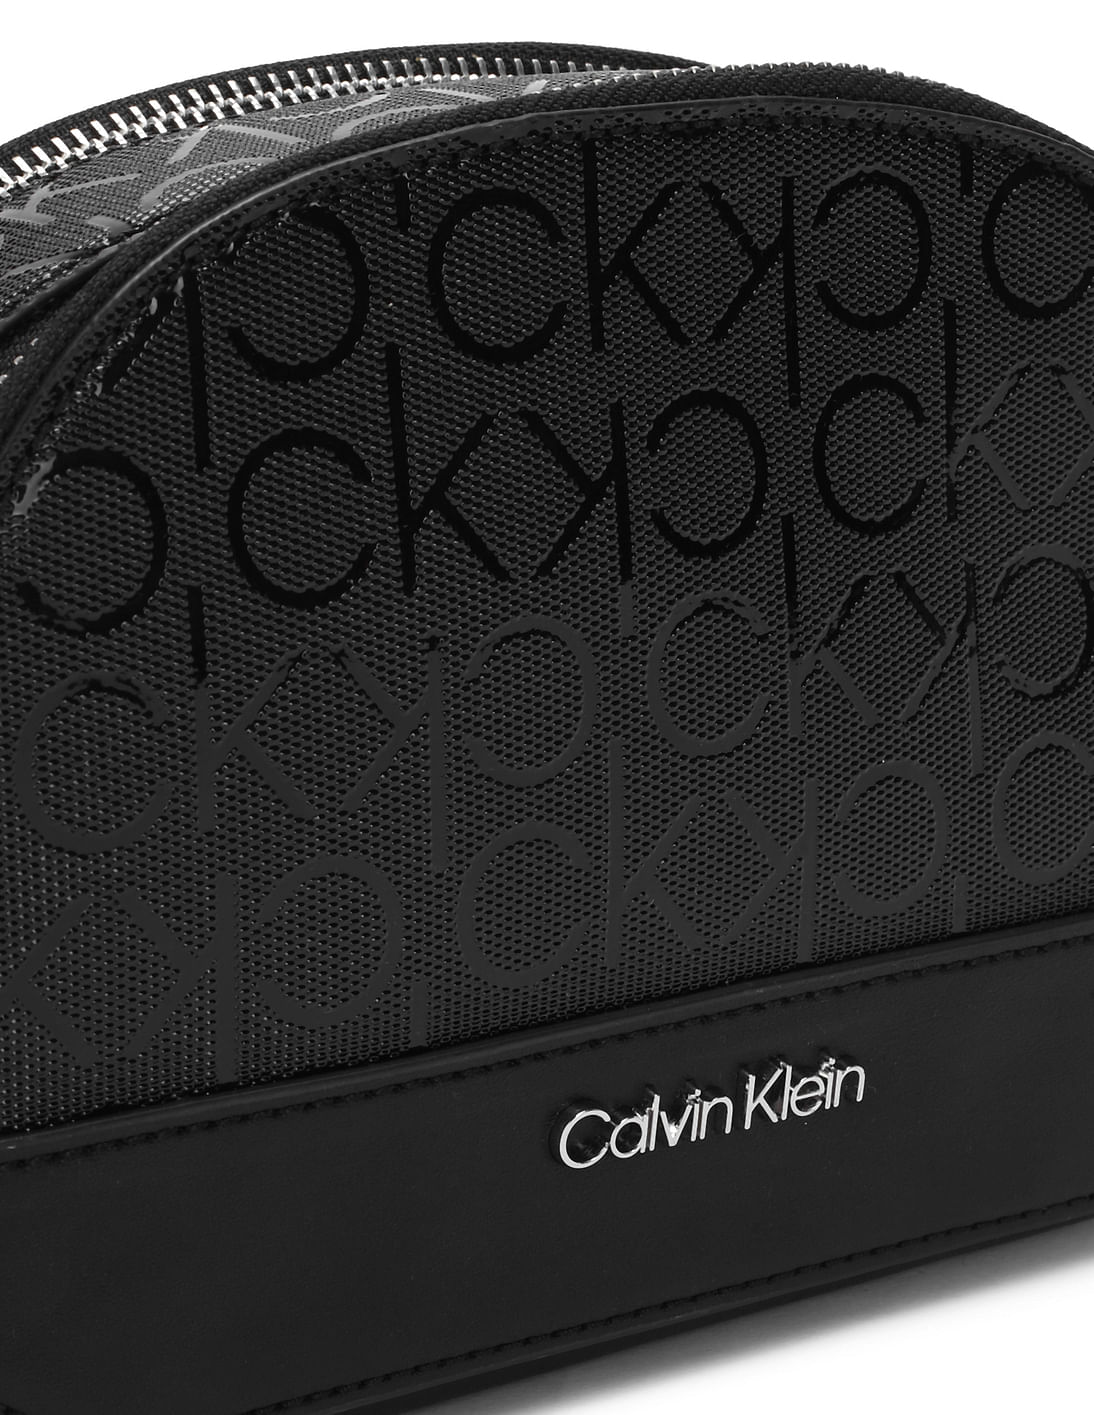 Buy Calvin Klein Women Black Monogram Ashley Crossbody Sling Bag 